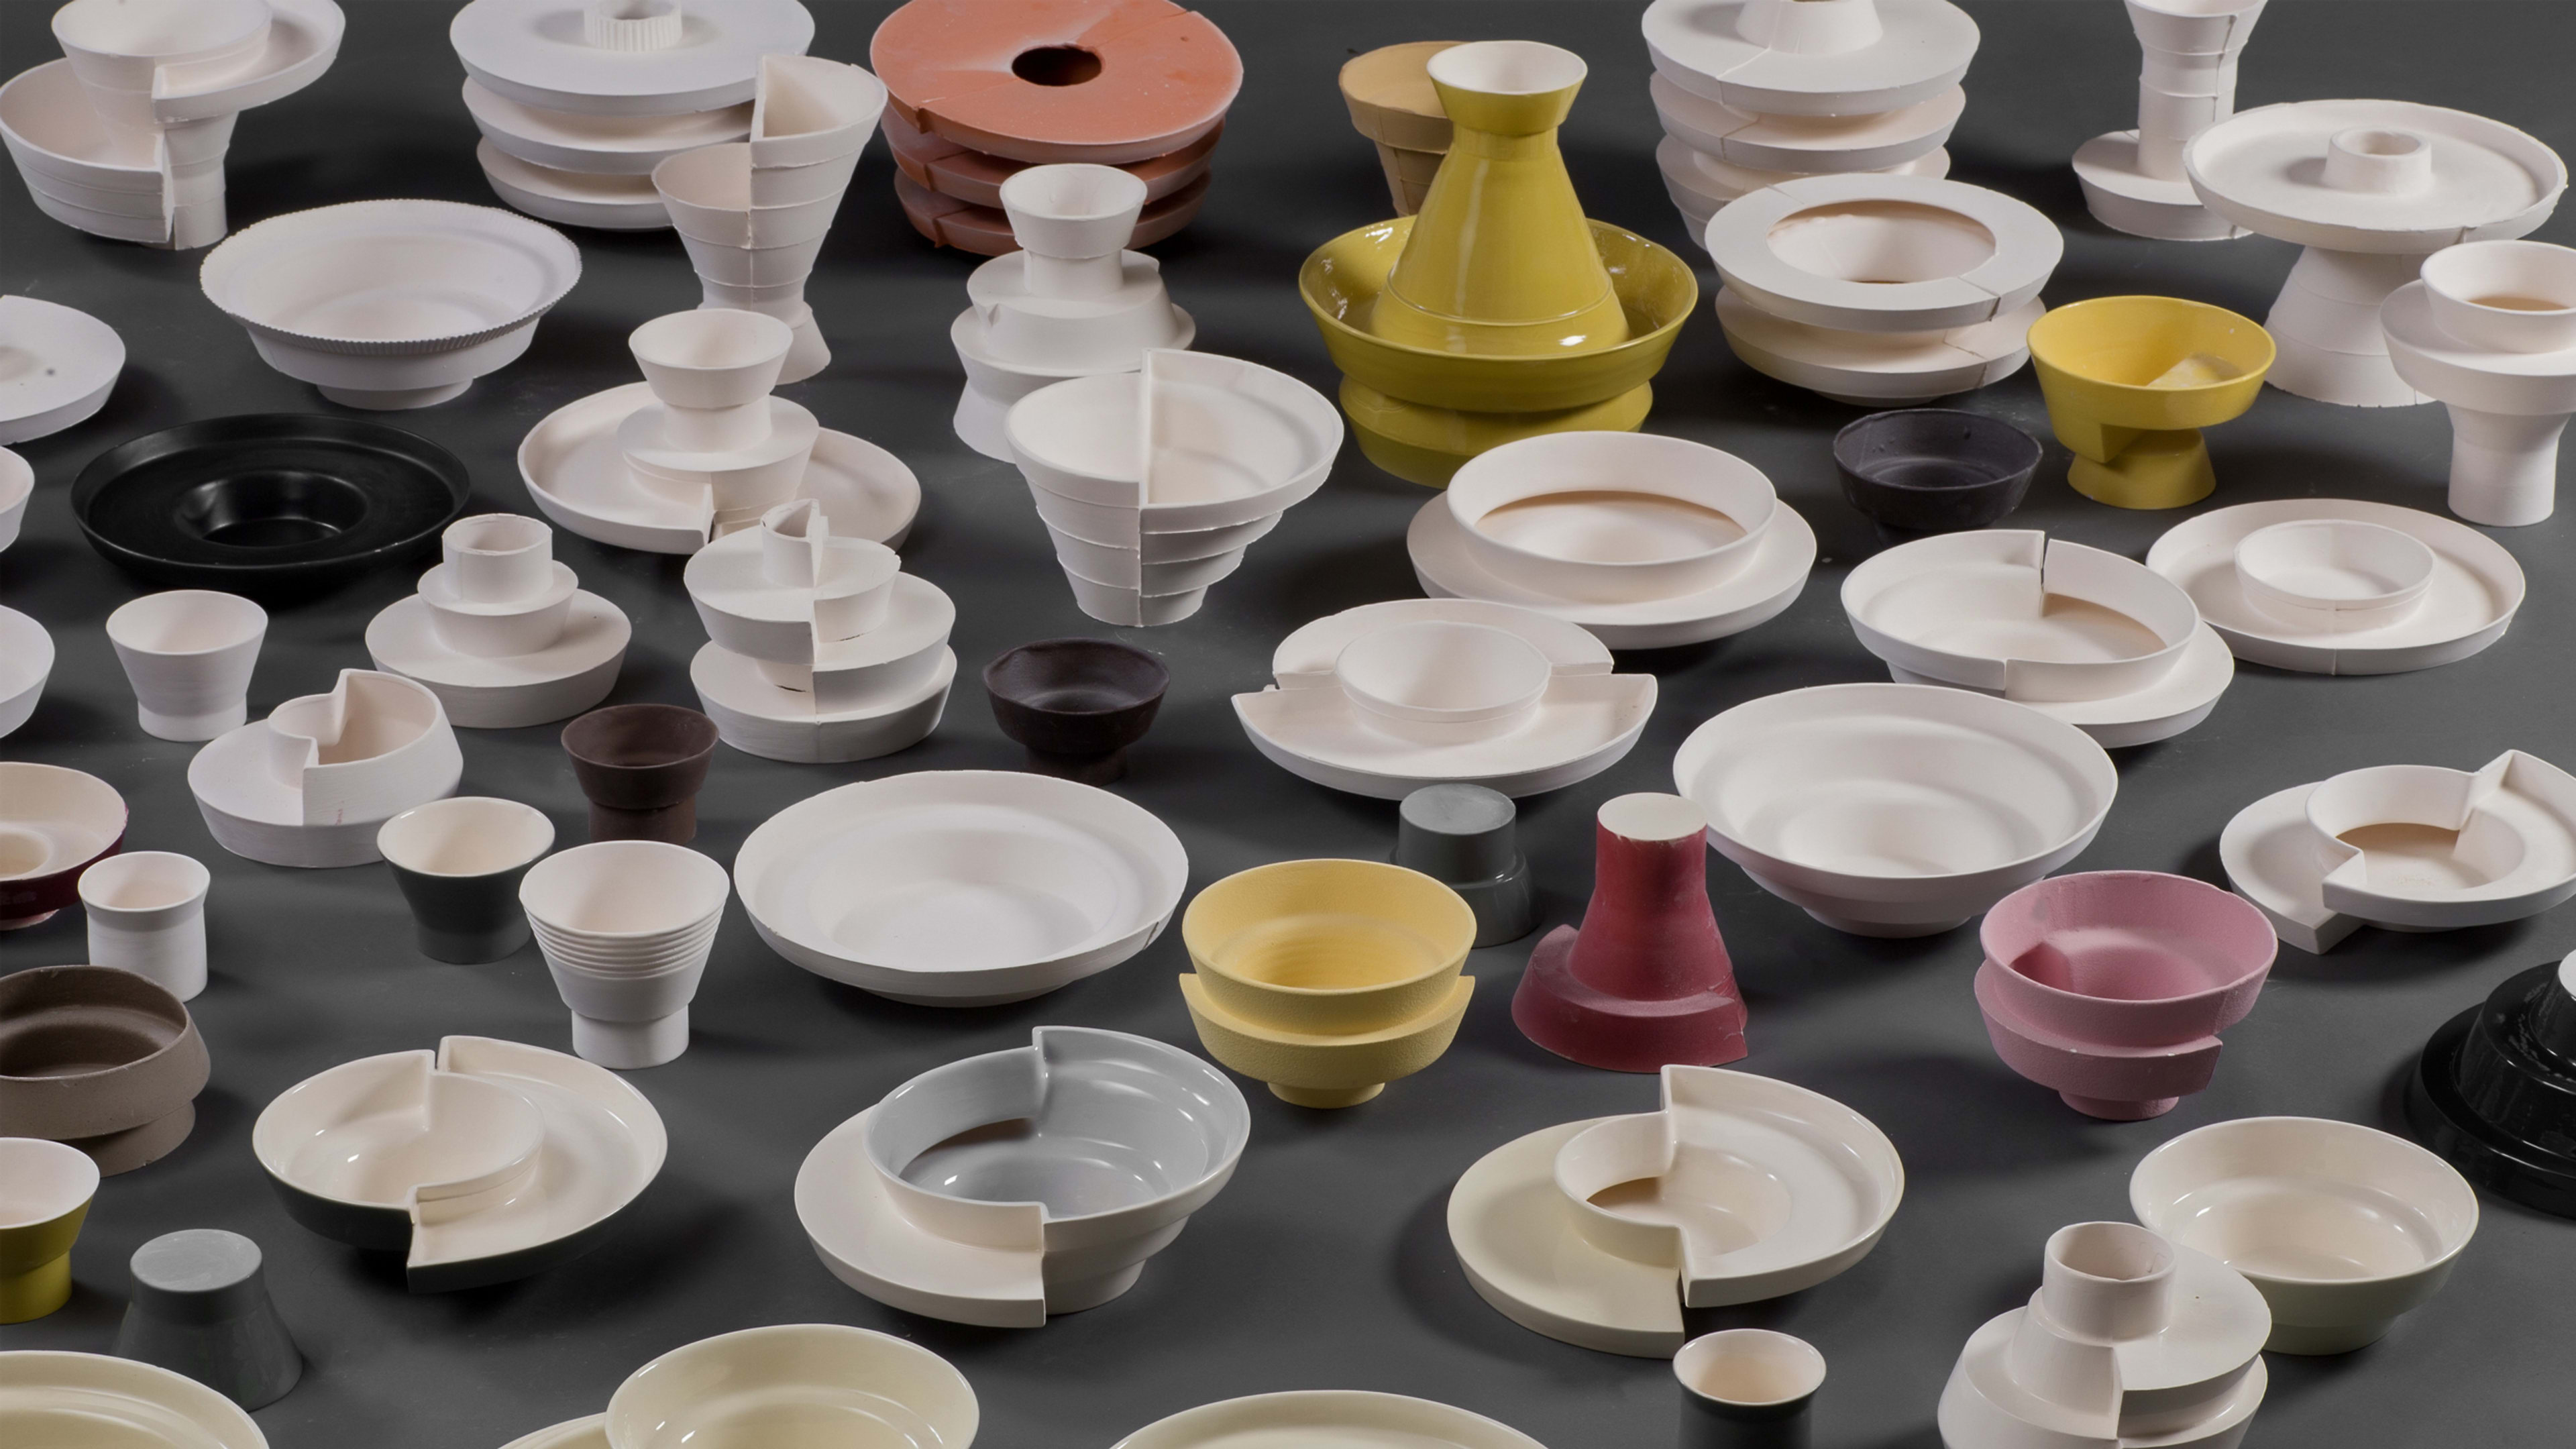 Ceramics get a futuristic makeover